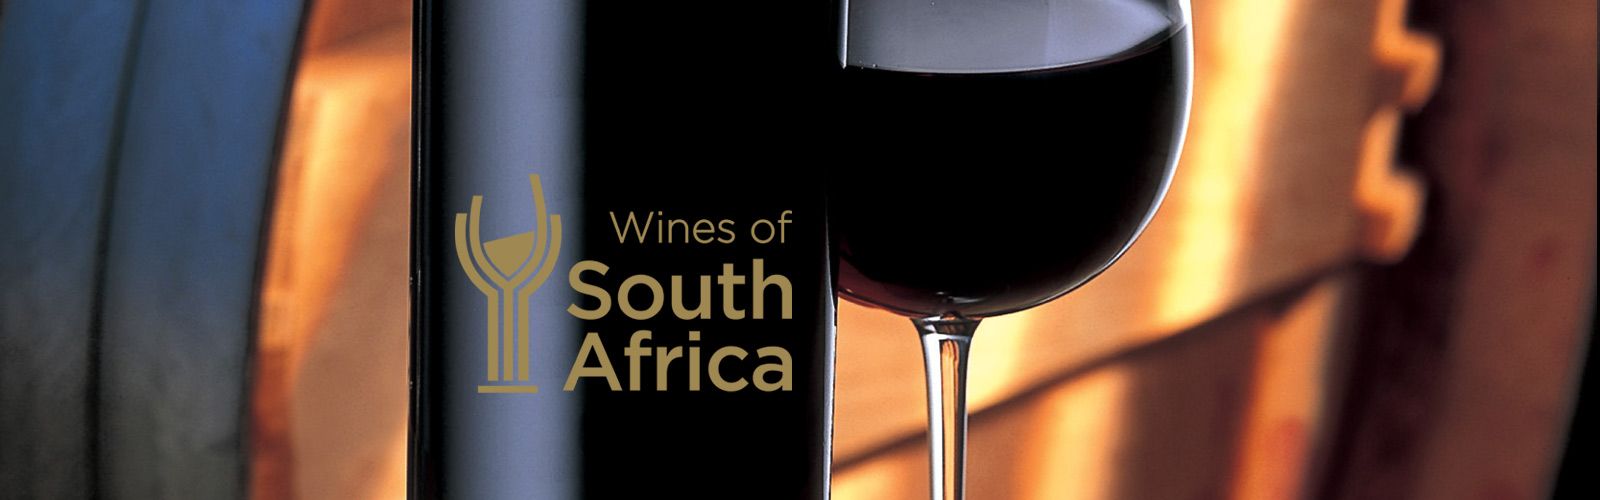 南非葡萄酒拍卖会成交价再创新高